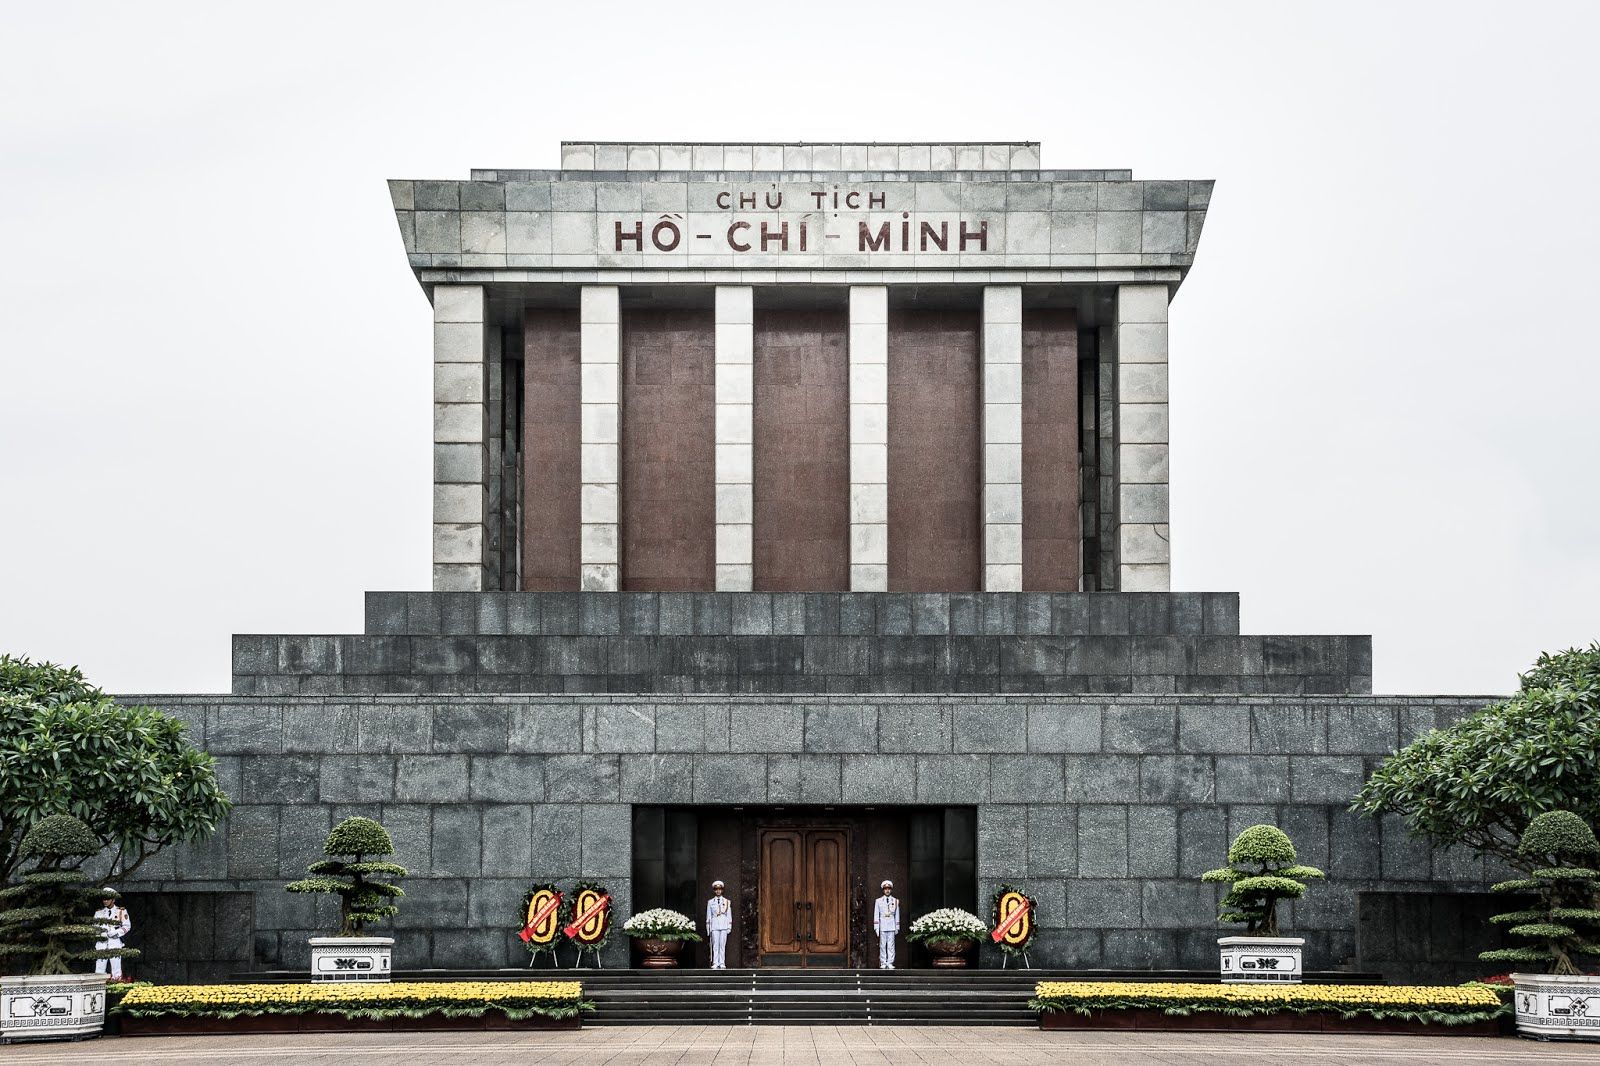 Viếng Lăng Bác là một trong những hoạt động mang tính lịch sử và văn hóa rất đặc biệt tại Hà Nội. Cùng chiêm ngưỡng những hình ảnh đẹp và trong sáng của khu lăng mộ và tìm hiểu thêm về con người và vị trí của Chủ tịch Hồ Chí Minh trong lòng người dân Việt Nam.